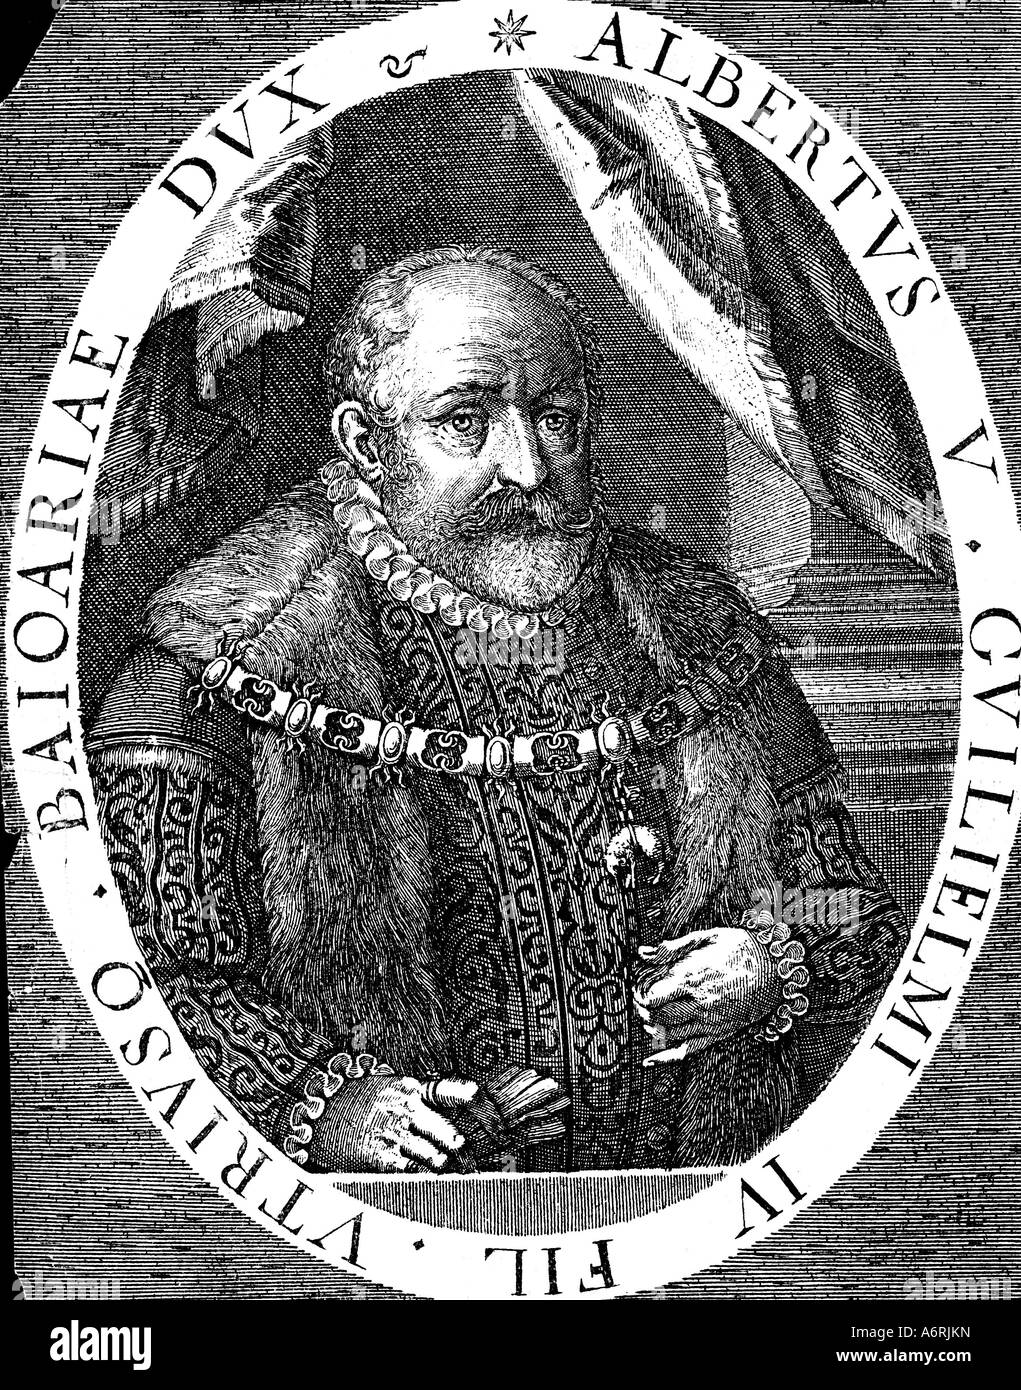 "Albert V,"der großmütige", 29.2.1528 - 4.10.1579, Herzog von Bayern seit 7.3.1550, Porträt, Kupfer Gravur, Wittelsbach, Stockfoto